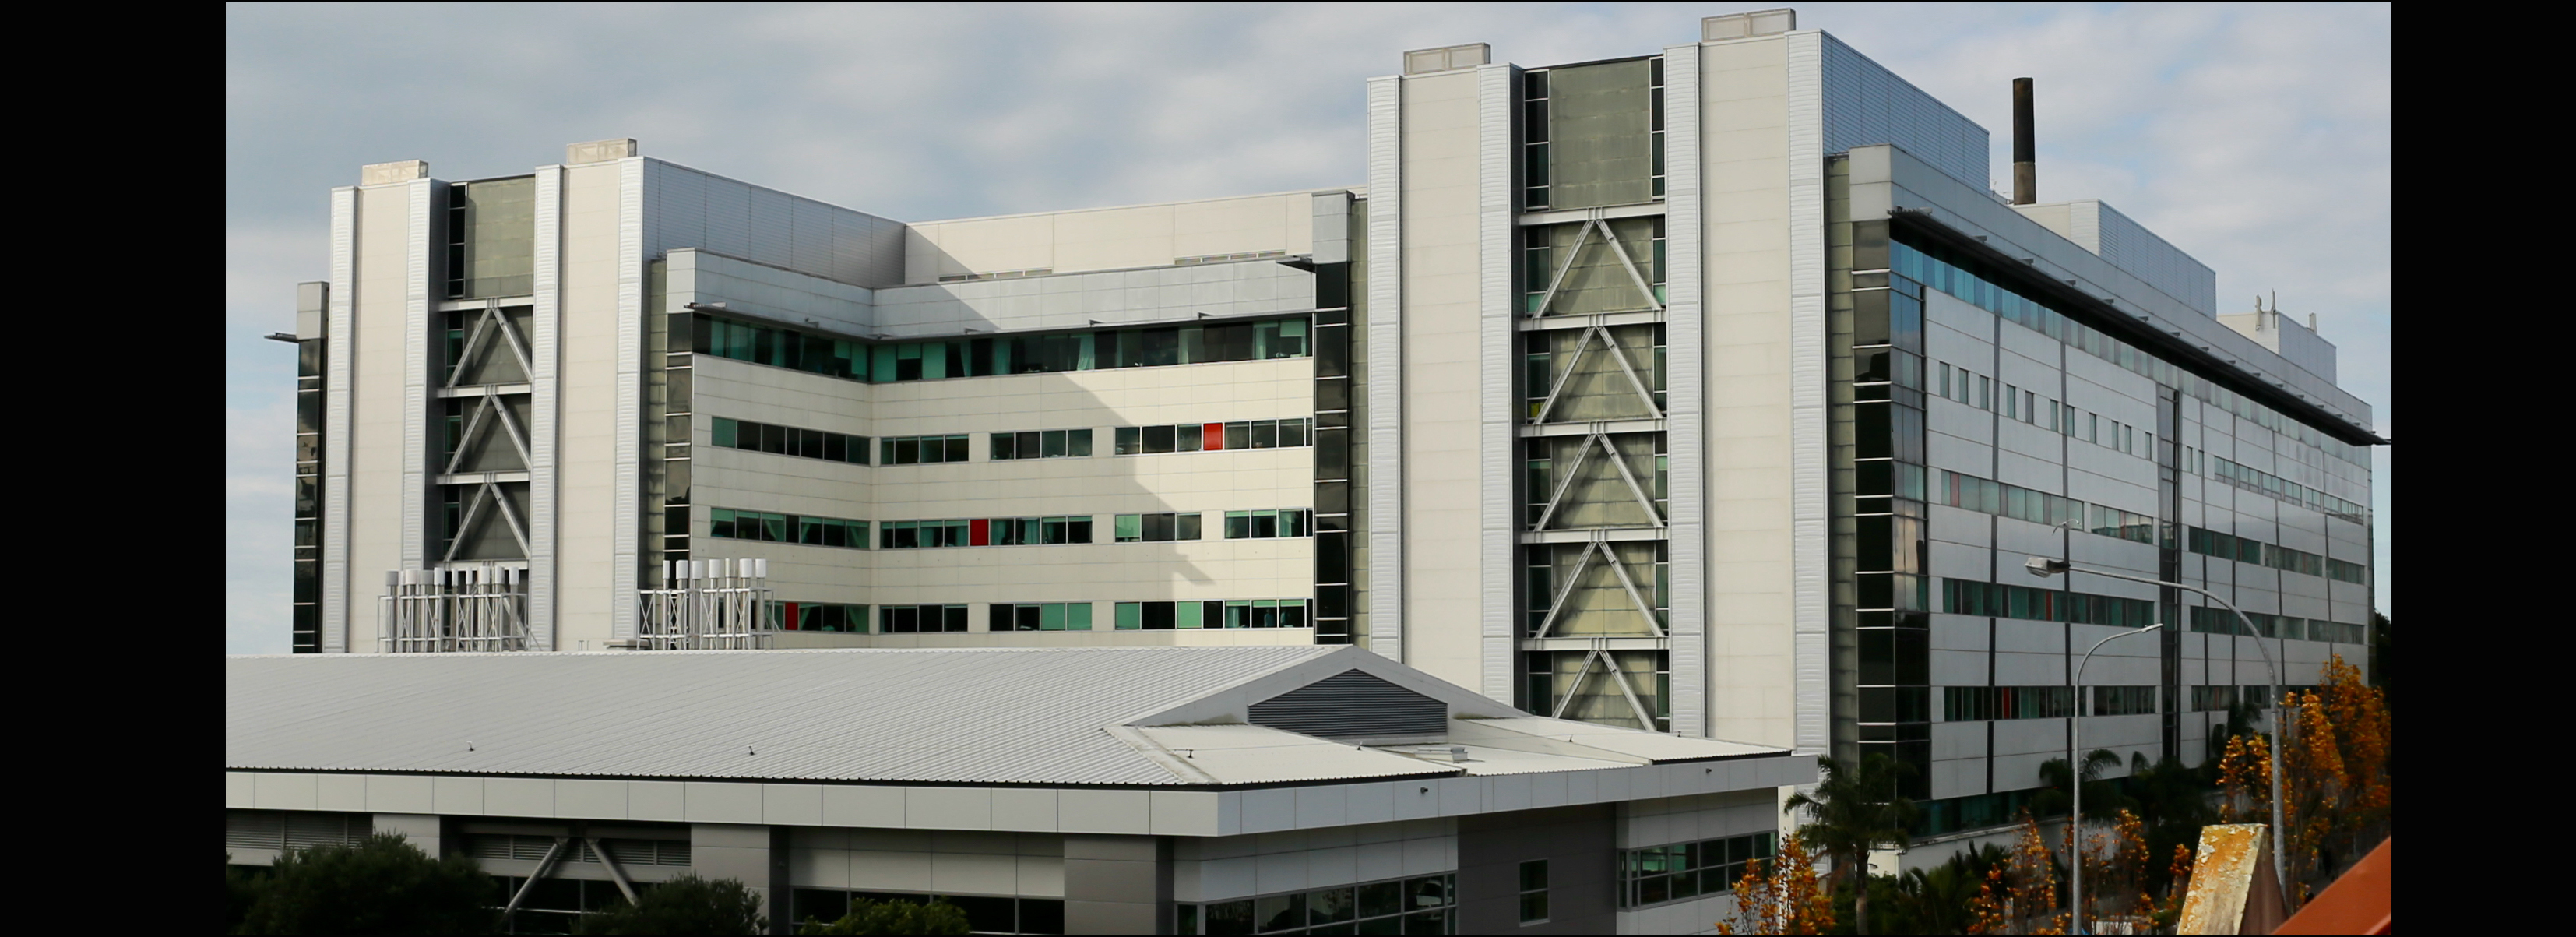 Auckland Hospital u1